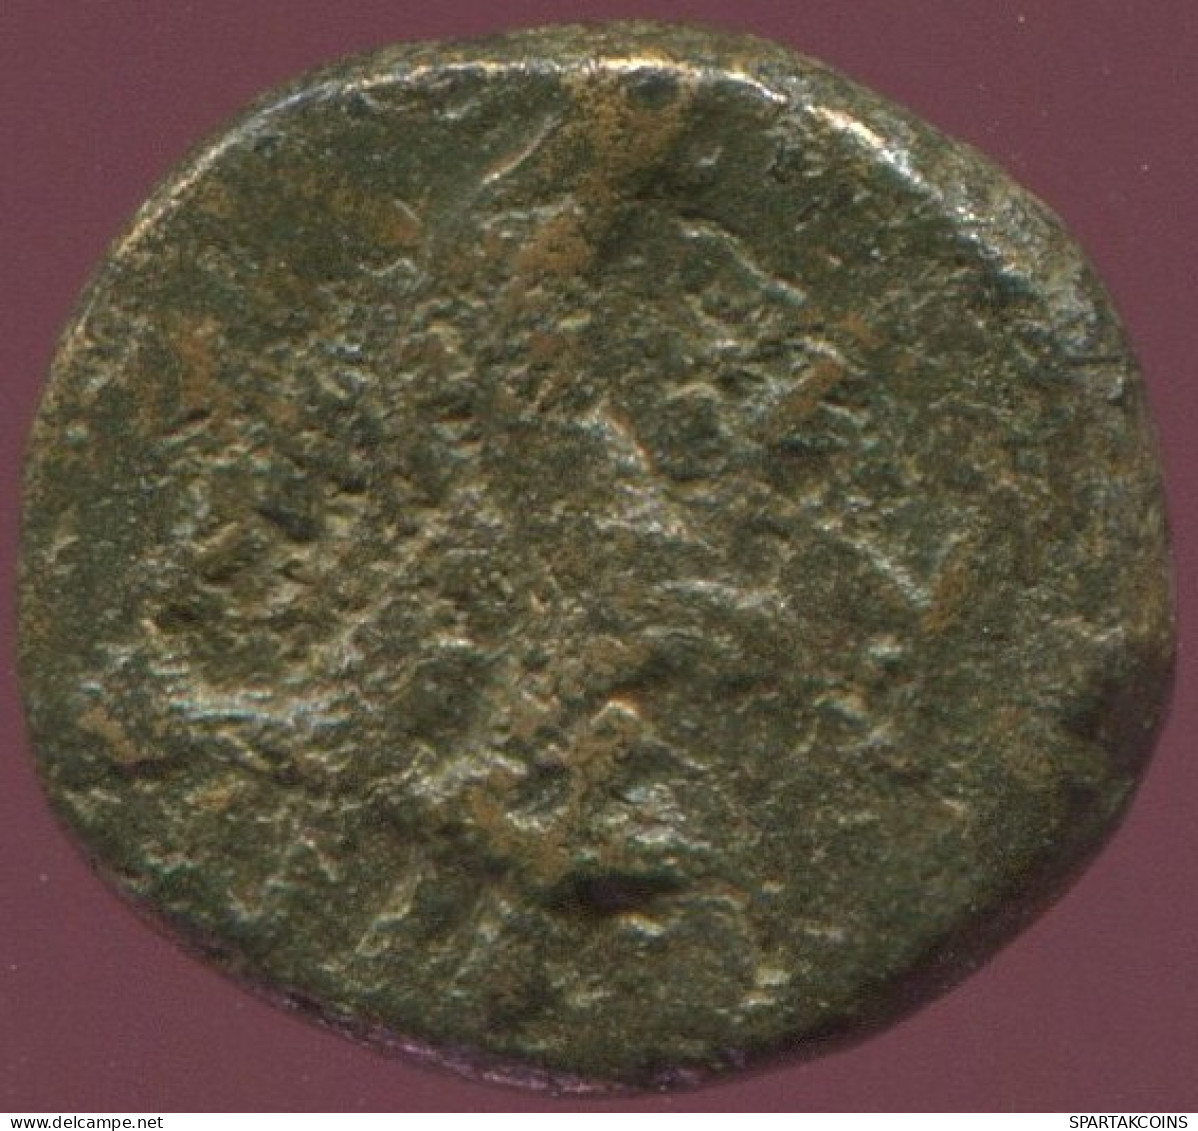 Ancient Authentic Original GREEK Coin 1.7g/11mm #ANT1498.9.U.A - Griechische Münzen